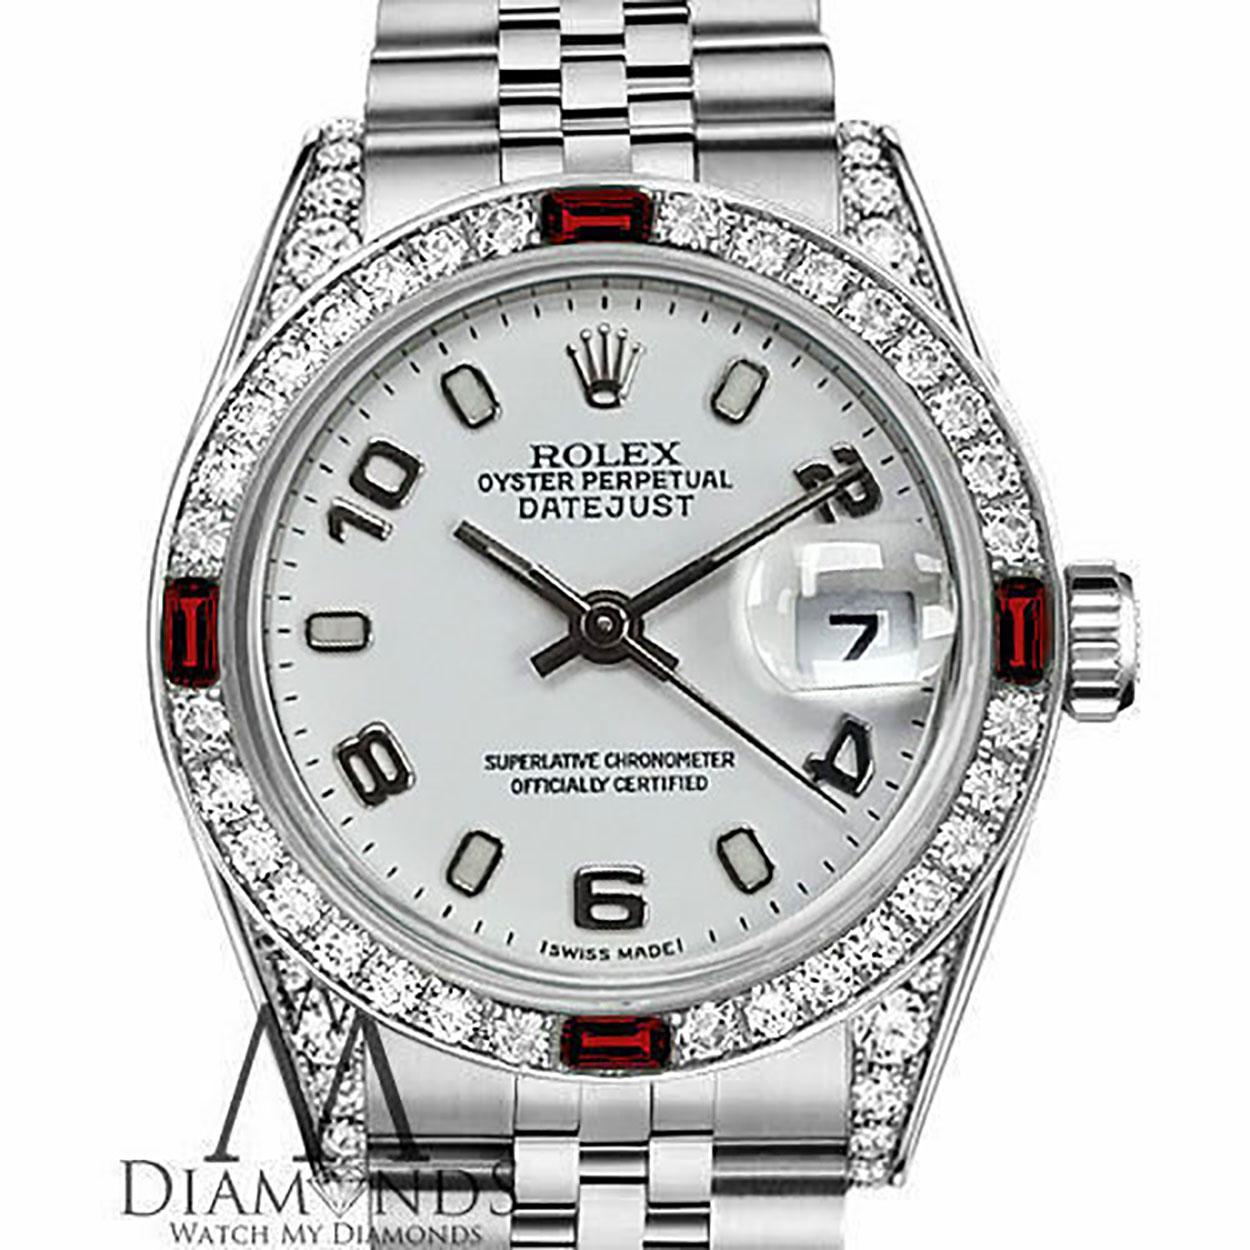 Rolex 26mm Datejust weißes Zifferblatt Diamant & Rubin Lünette Edelstahl Uhr
Wir sind sehr stolz darauf, diesen Zeitmesser zu präsentieren, der sich in einem tadellosen Zustand befindet. Er wurde professionell poliert und gewartet, um sein